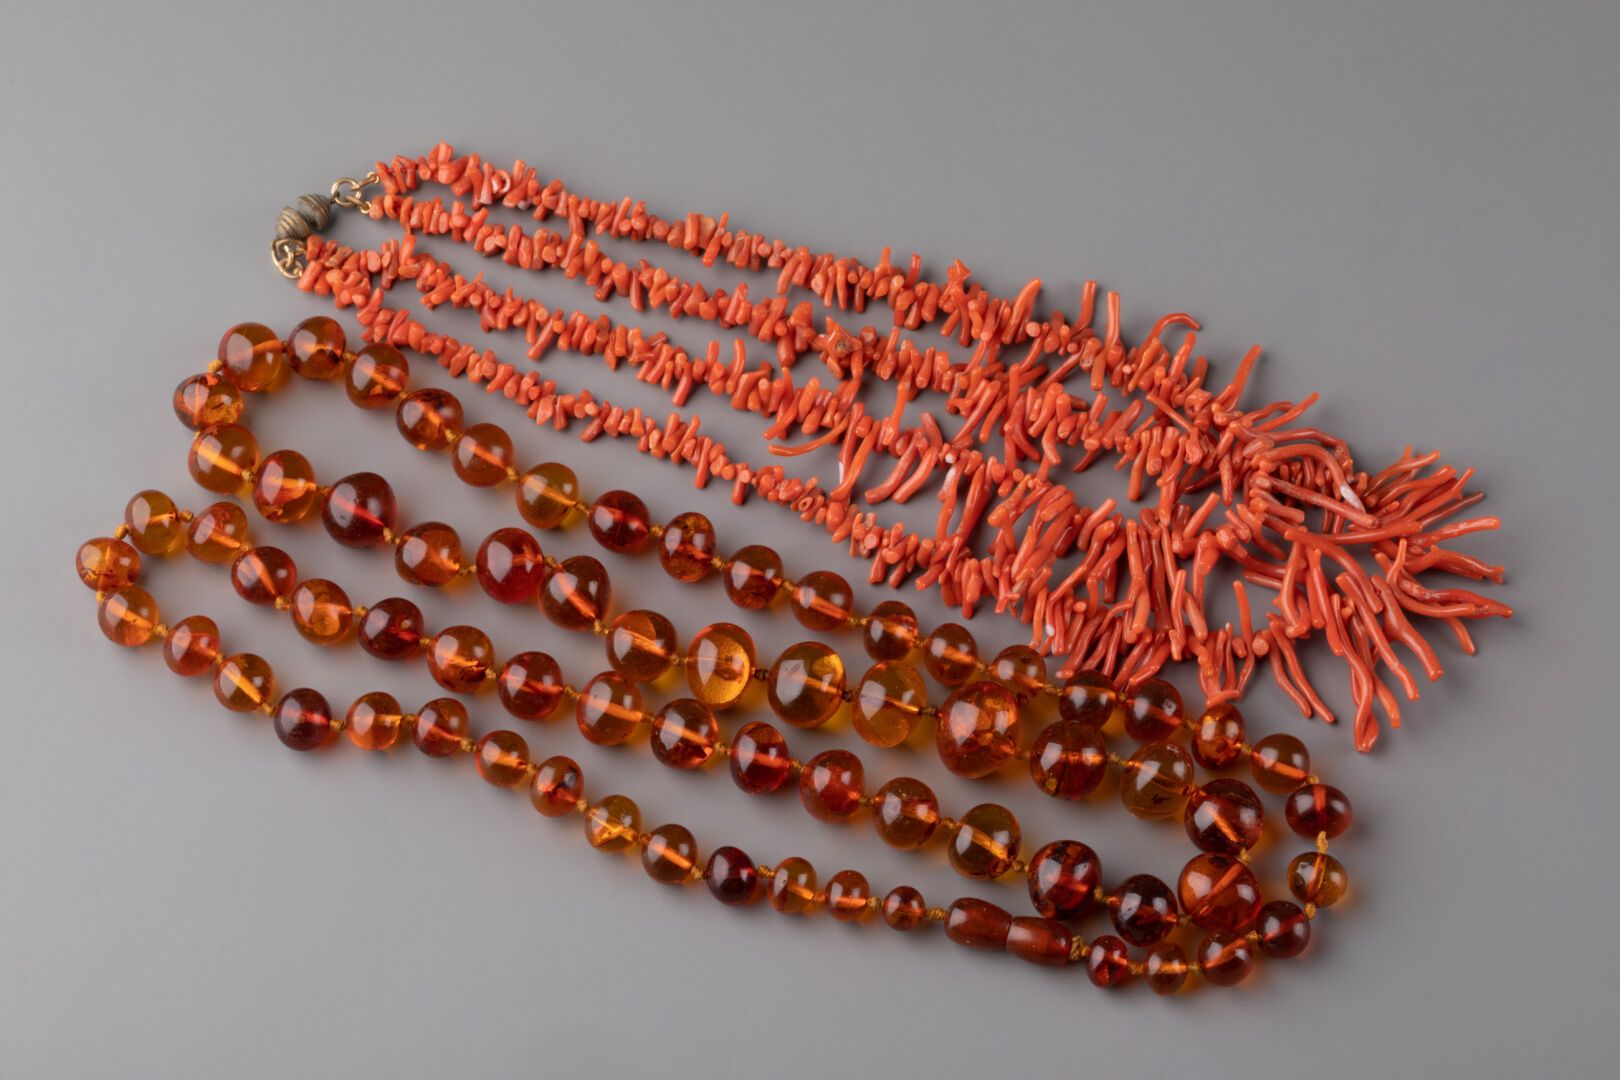 Null 由两个项链组成，一个由珊瑚枝制成，另一个有琥珀色的珠子。